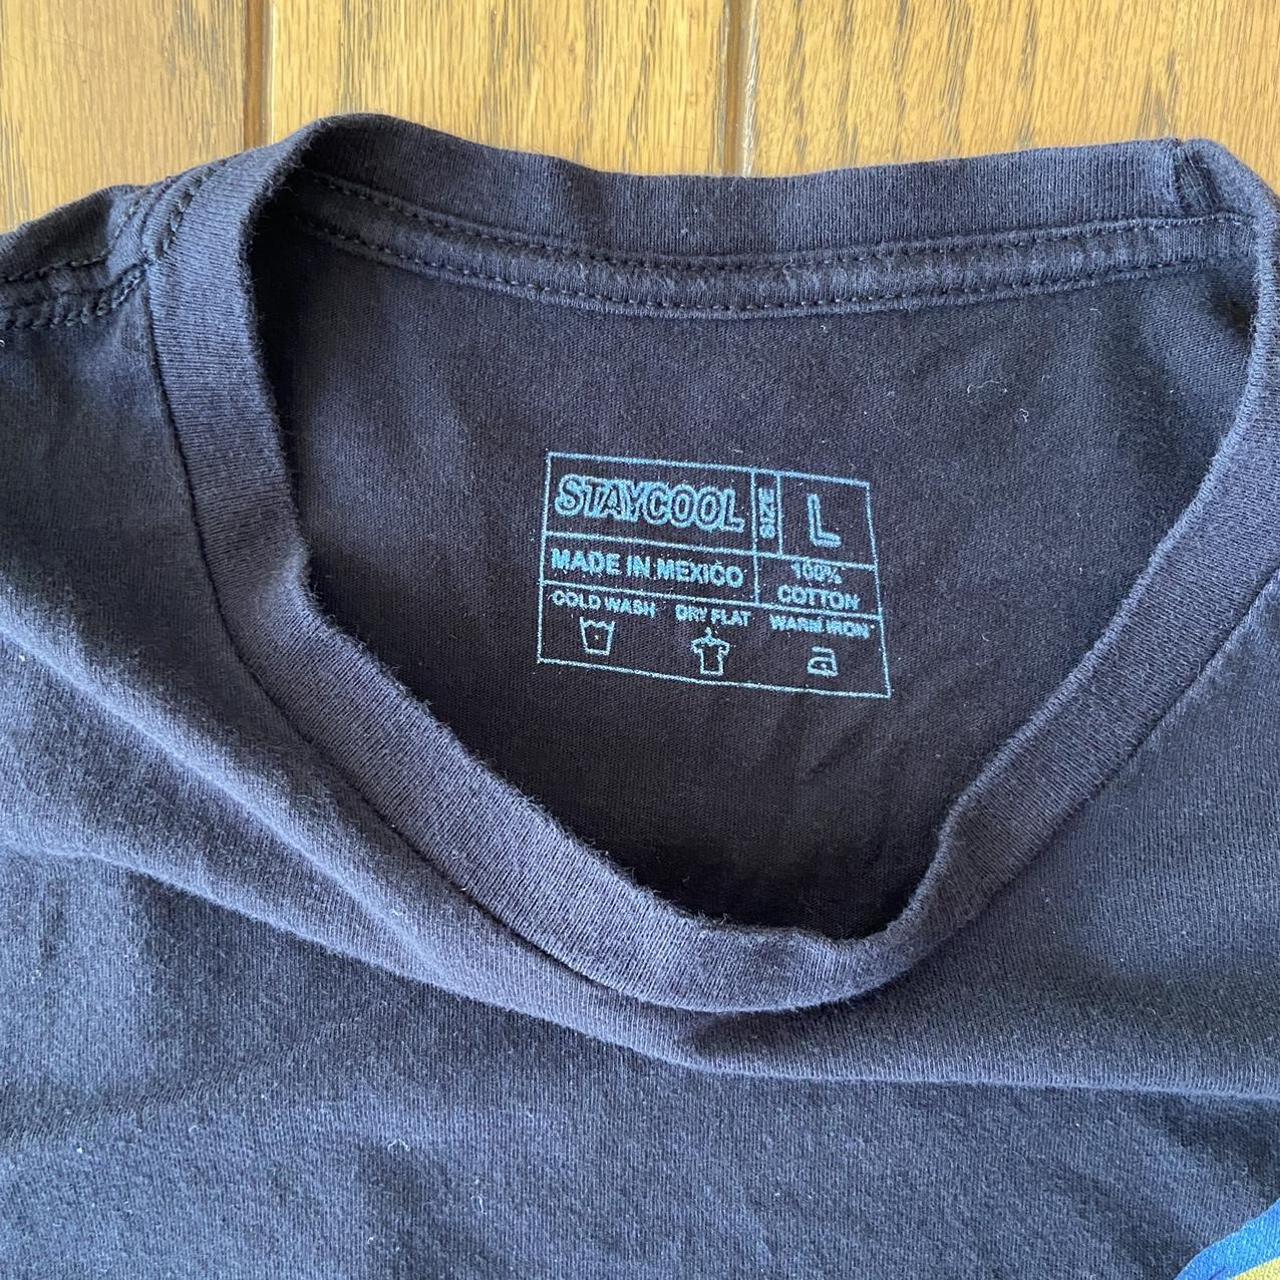 Product Image 3 - #STAYCOOLNYC men’s tshirt in black